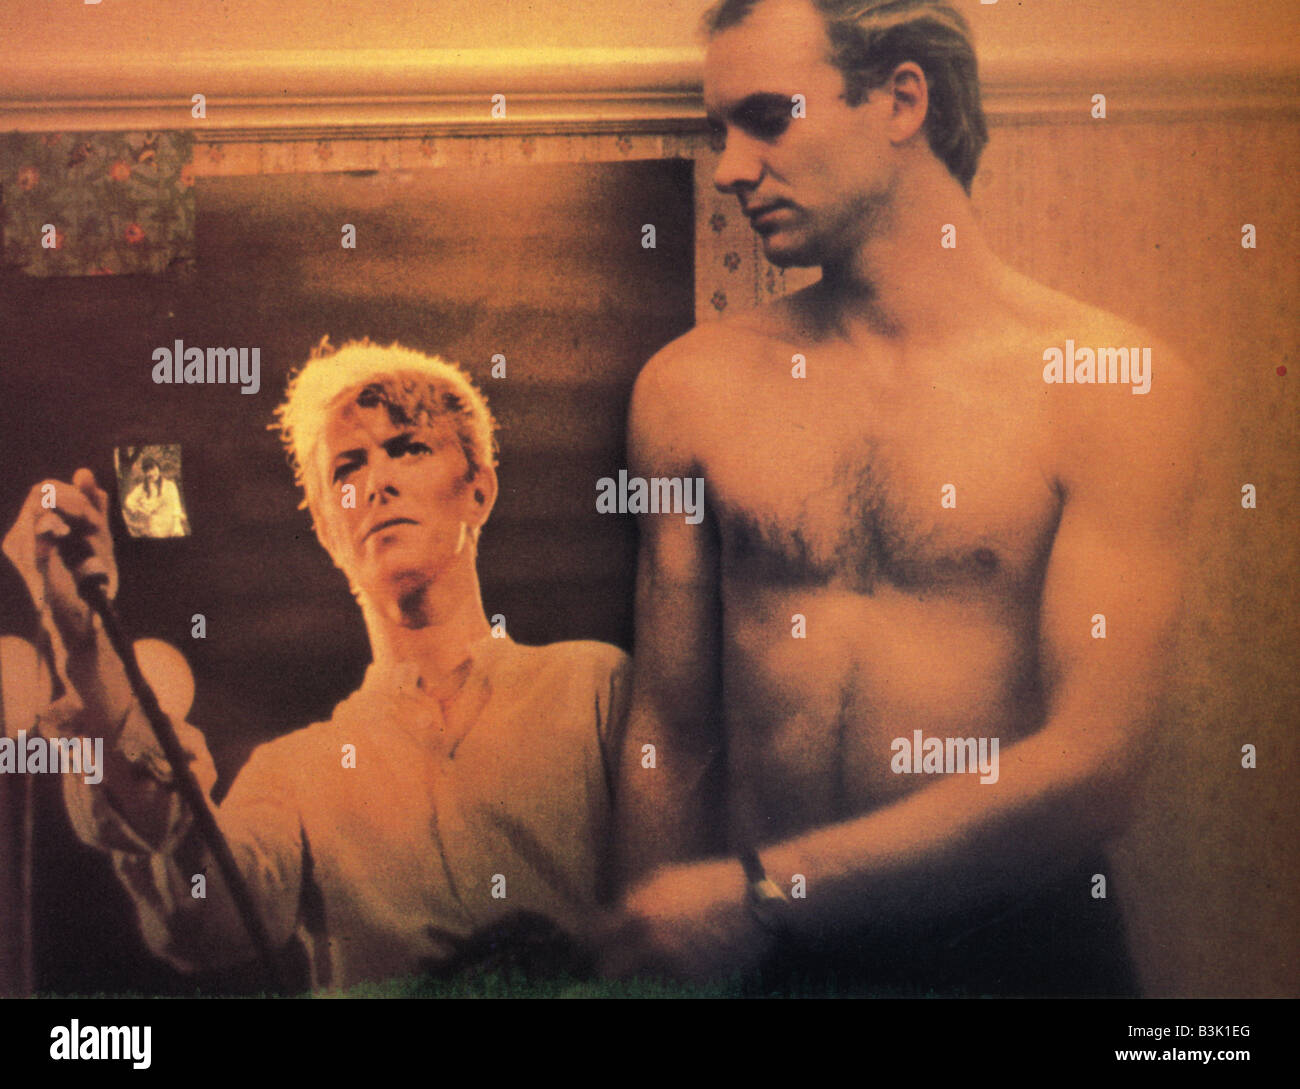 Du soufre et de mélasse 1982 film Namara avec Sting Banque D'Images